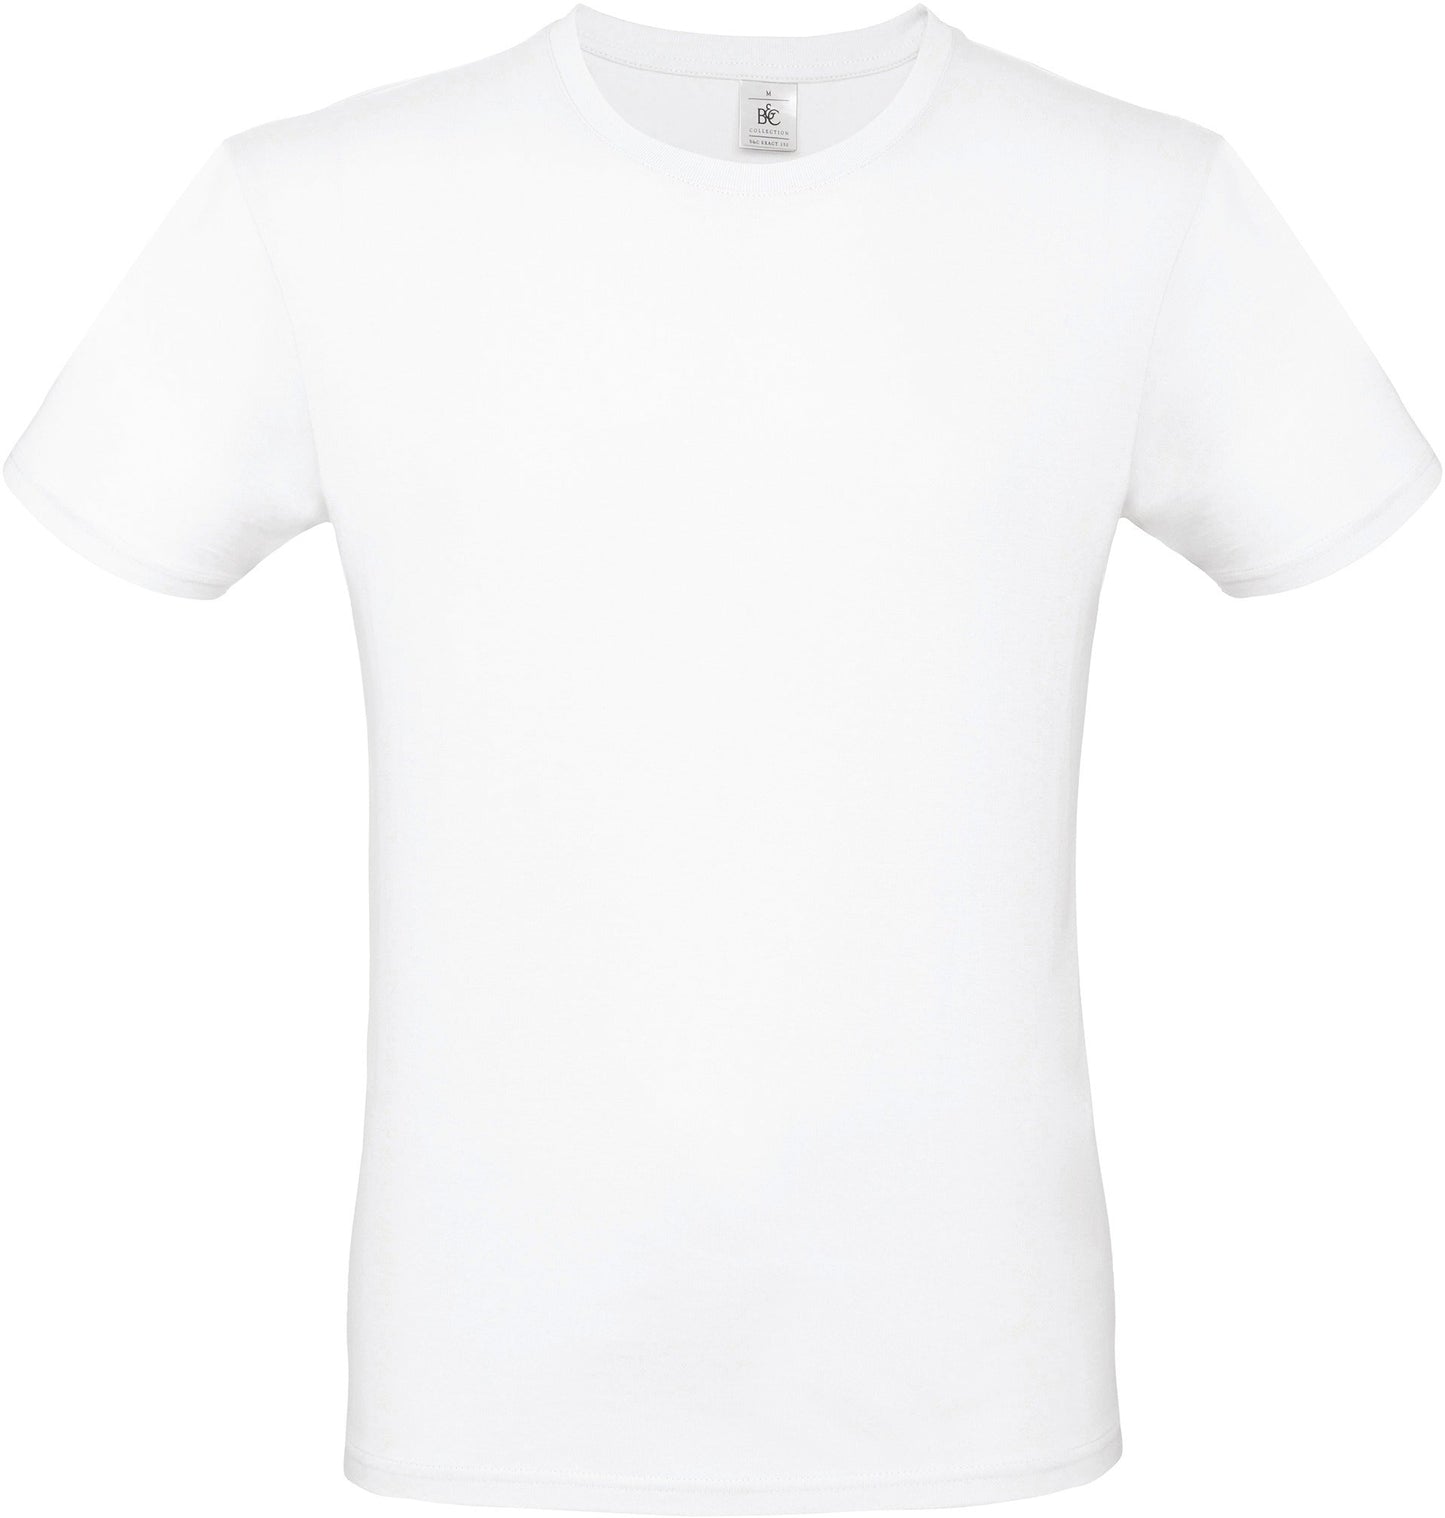 B&c - T-shirt - 7 coloris (Optionnel)